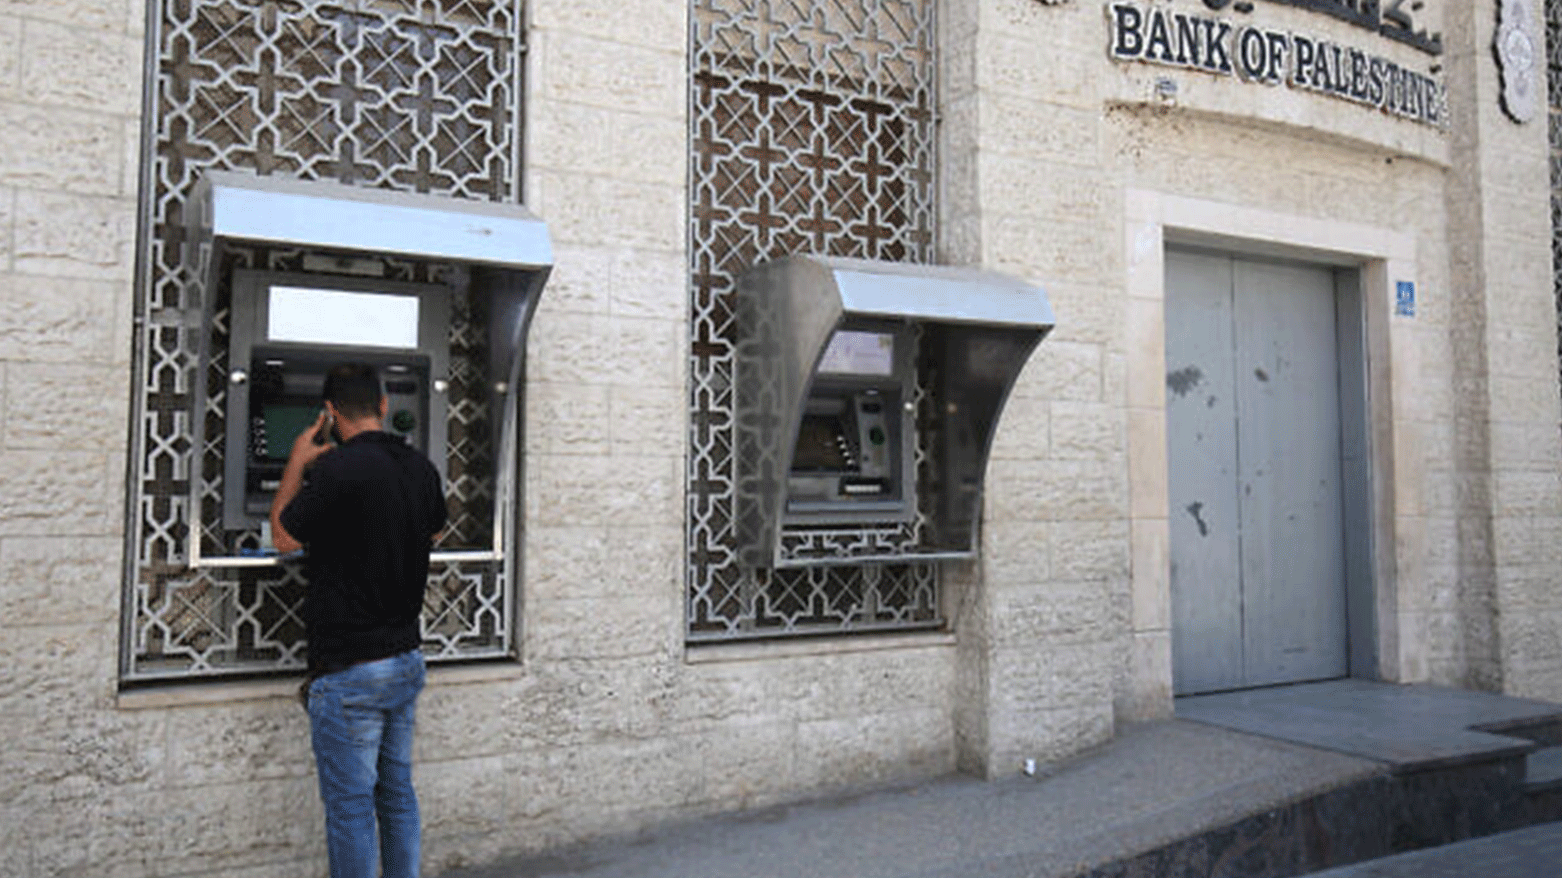 يمكن أن يؤدي القرار الإسرائيلي إلى انخفاض معدلات السيولة لدى البنوك الفلسطينية